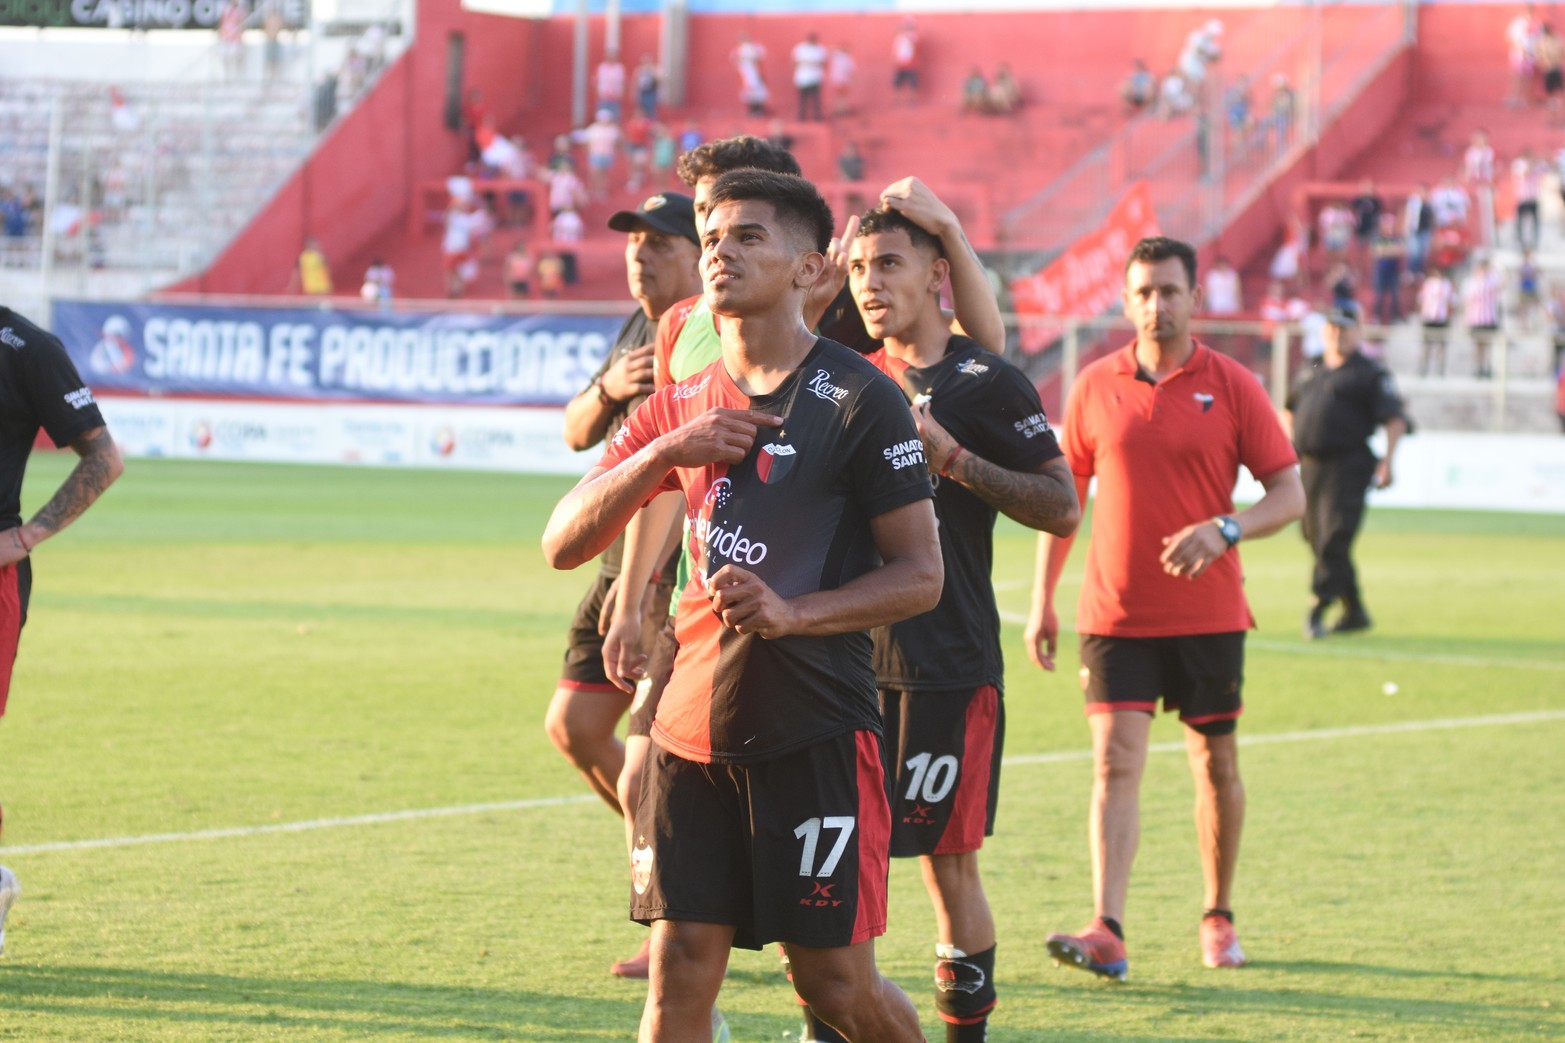 Unión le ganó 2 a 0 a Colón y espera conocer su adversario para la final por la Copa Santa Fe